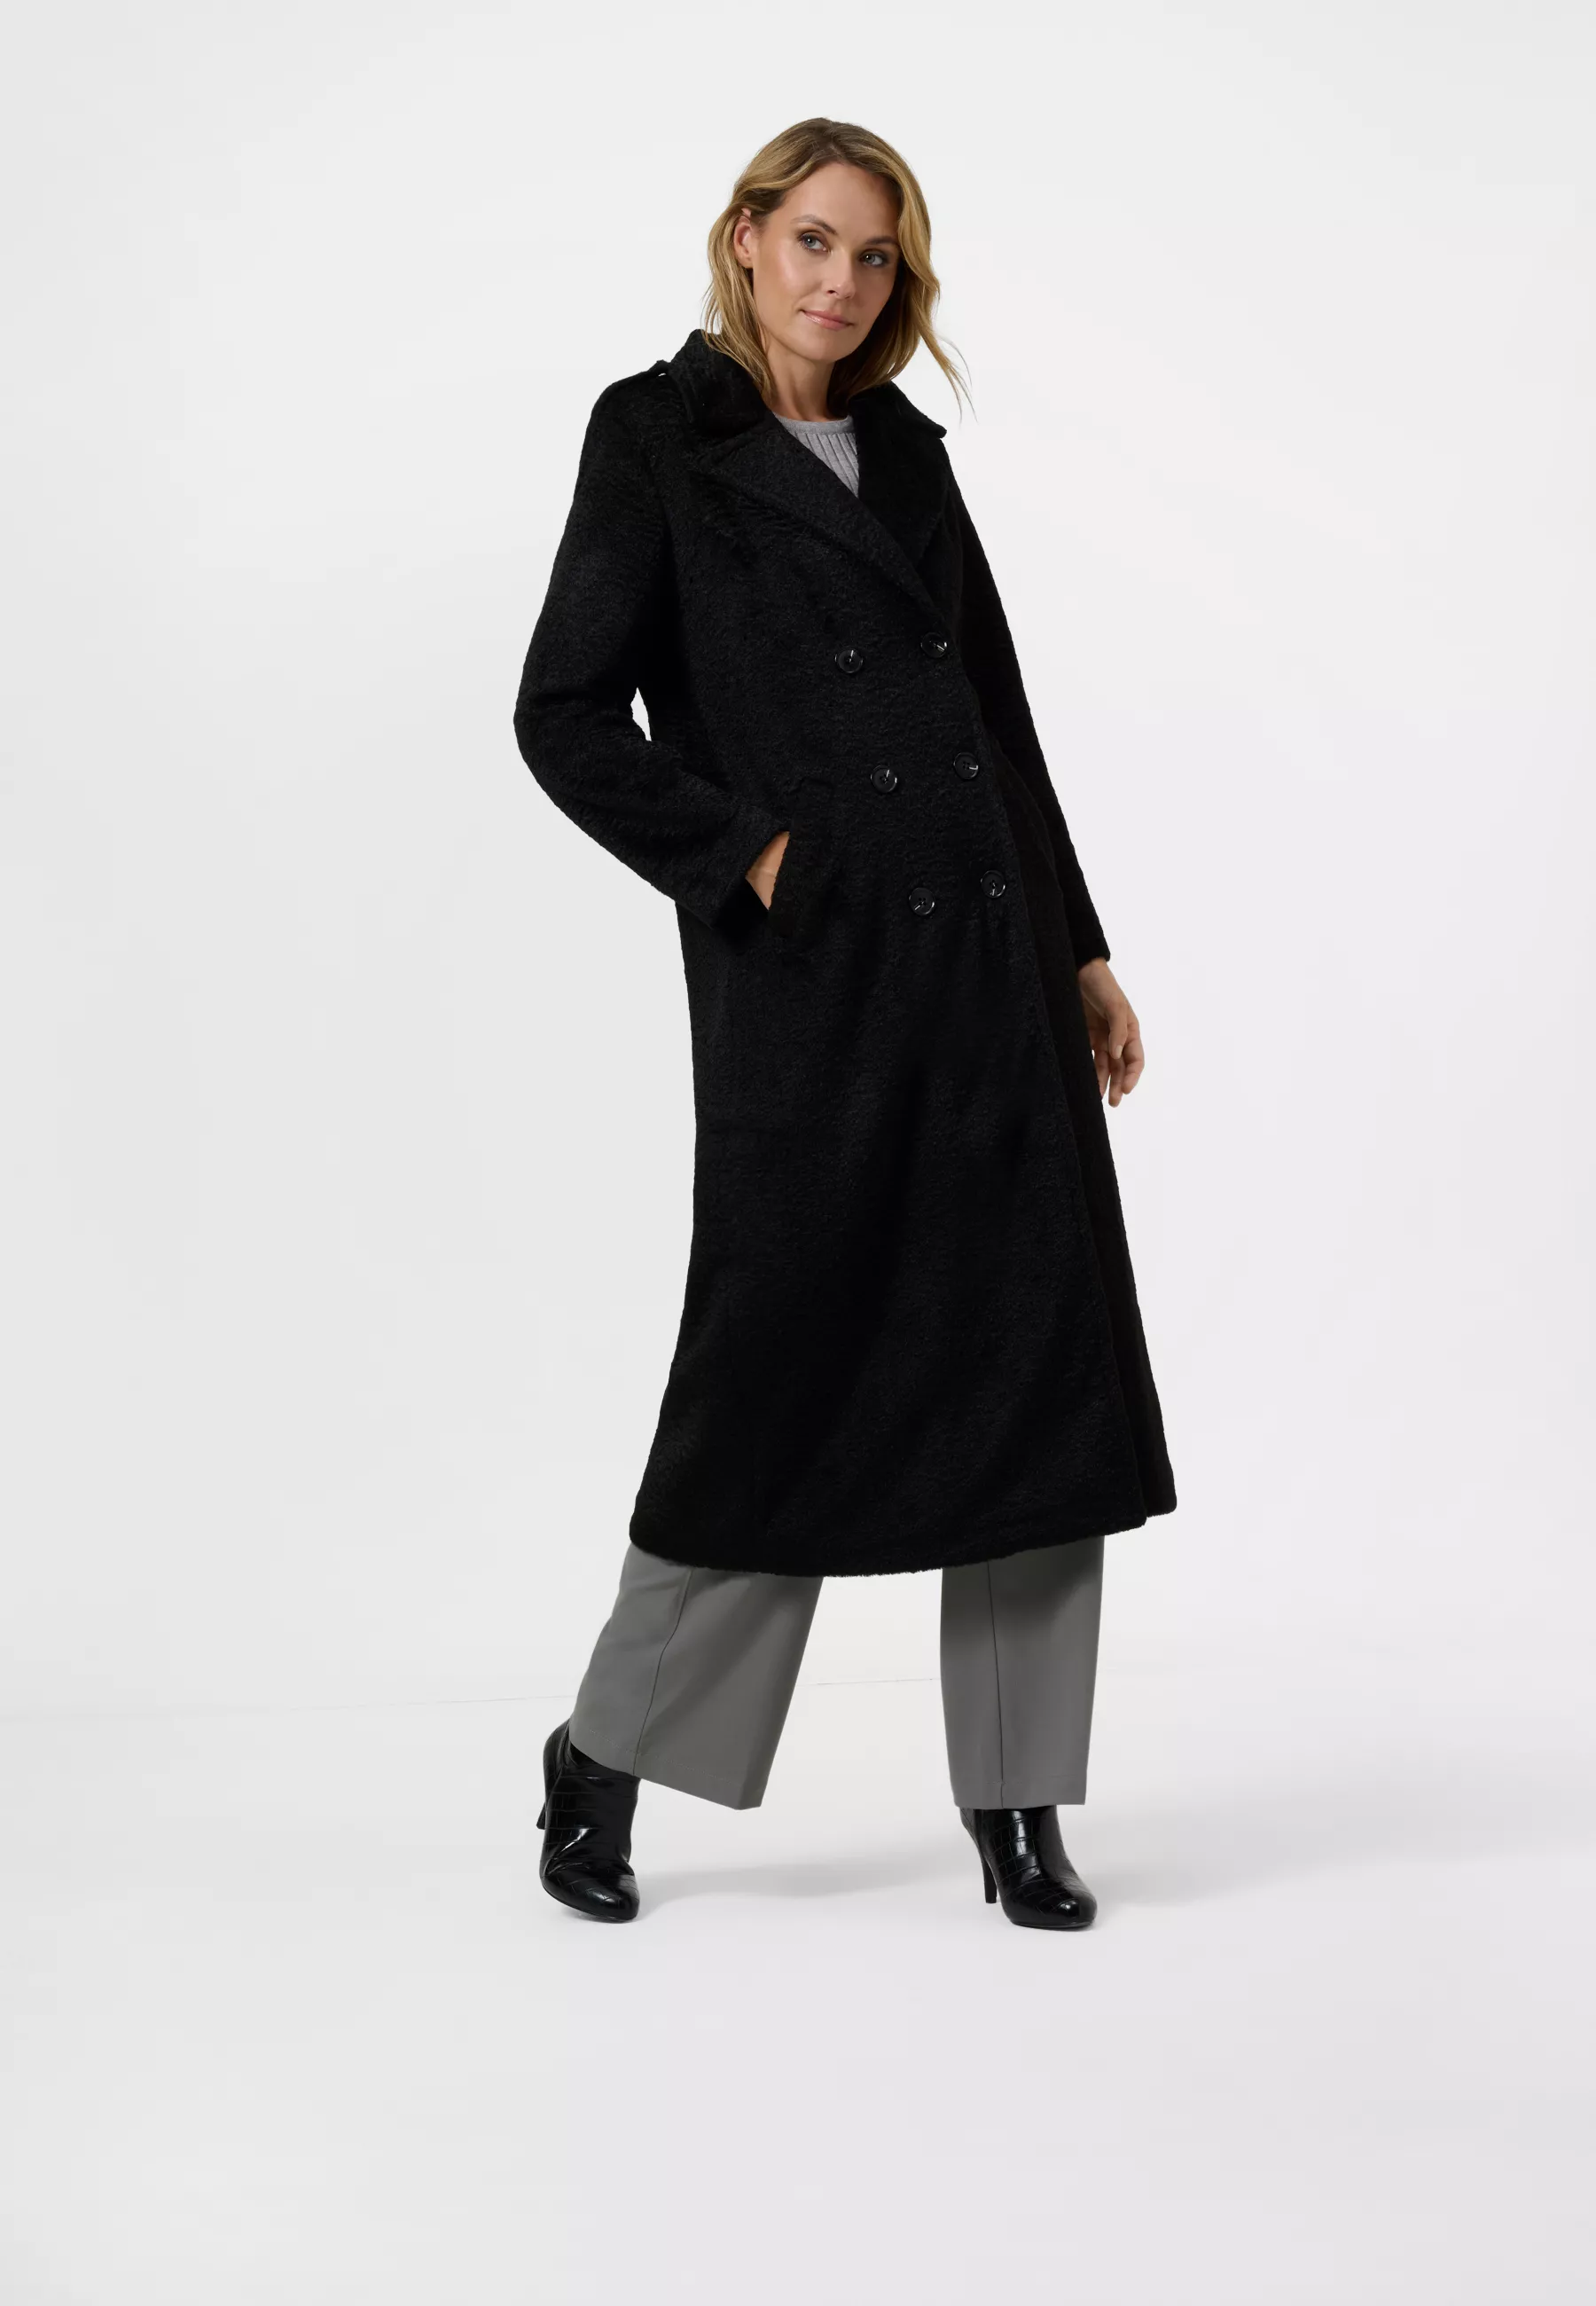 Damen Textil Mantel Pina in Schwarz von Ricano, Vollansicht am Model